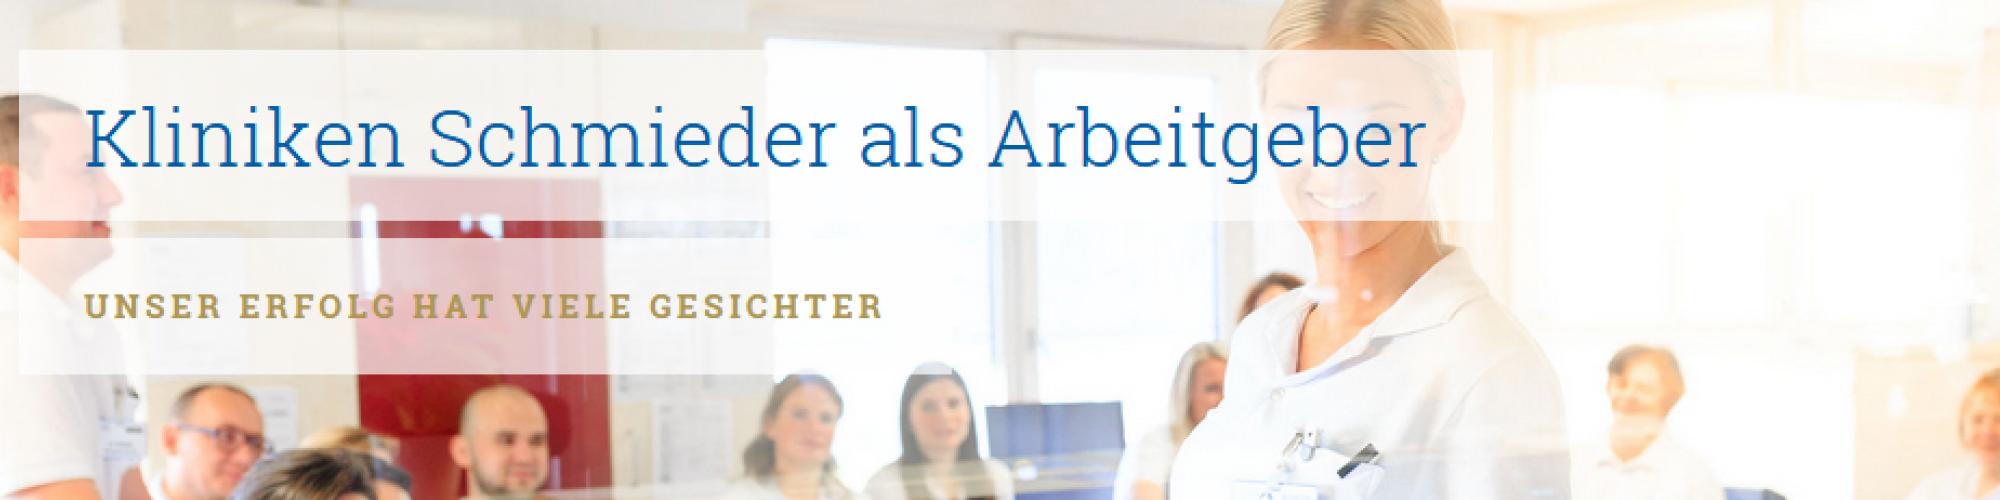 Kliniken Schmieder Stiftung + Co. KG